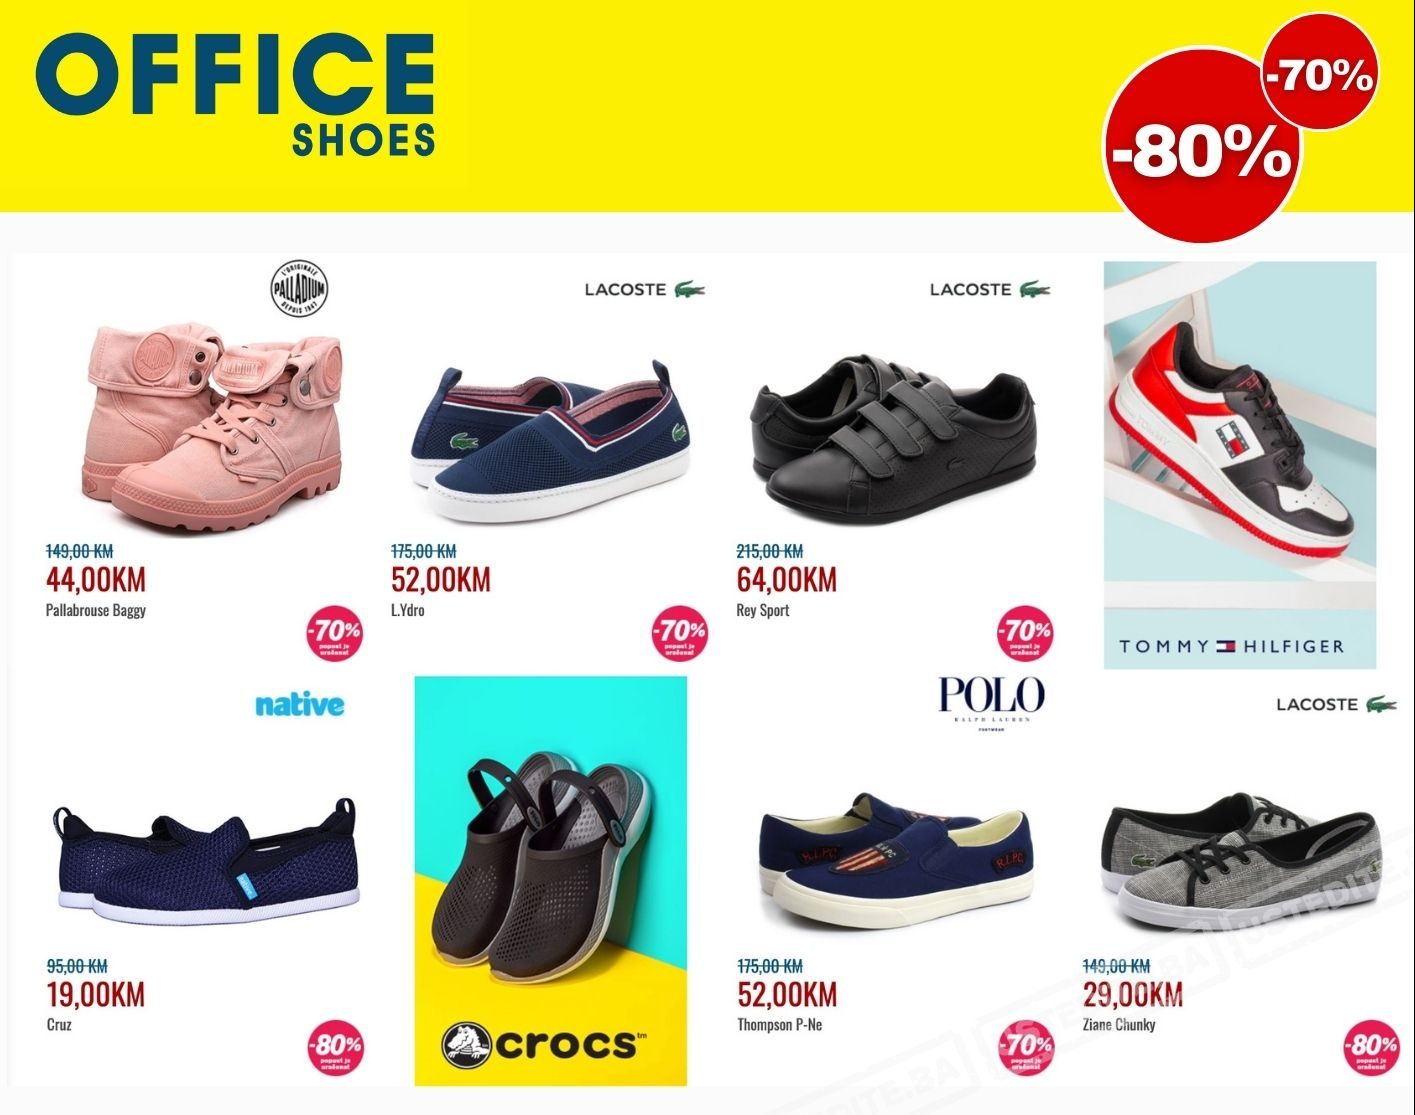 Office Shoes SNIŽENJE 70-80%